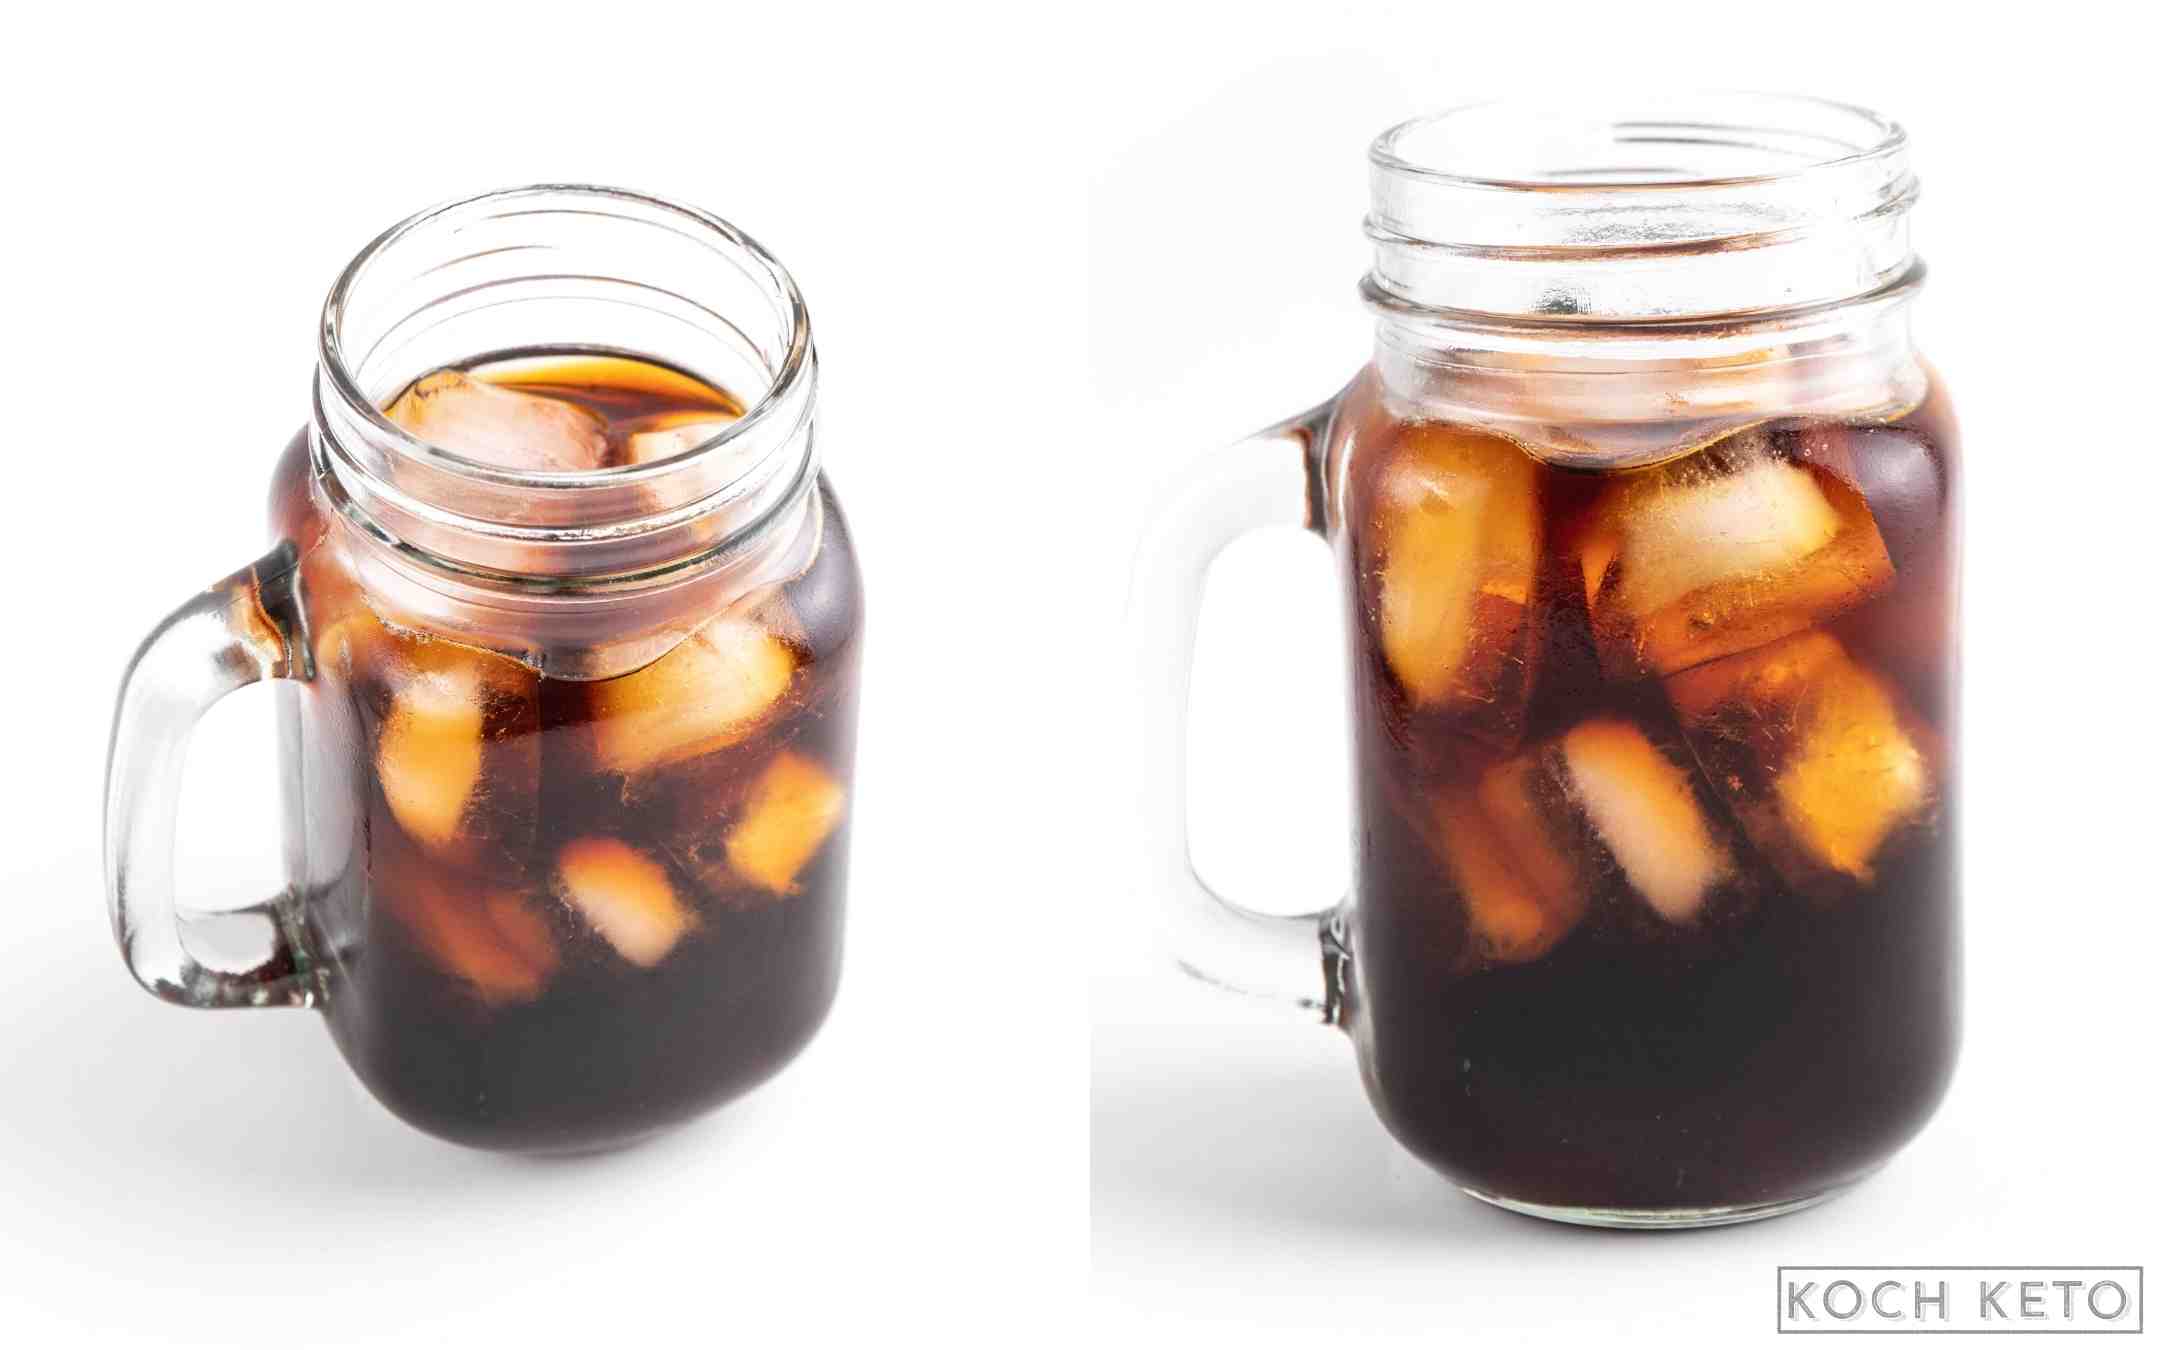 Cold Brew Kaffee ganz einfach selber machen Desktop Image Collage